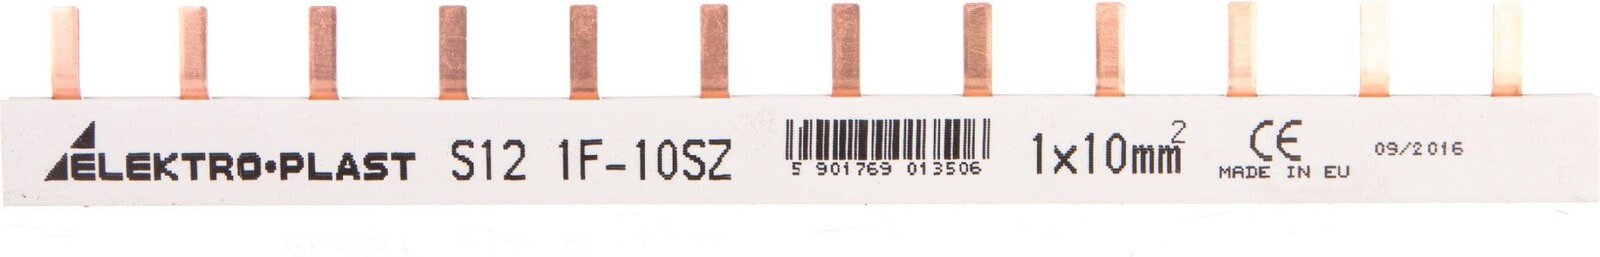 Elektro-Plast Busbar, PIN type 3P 16mm2 100A 12 pins IZS16 / 3F / 12 (45.262)